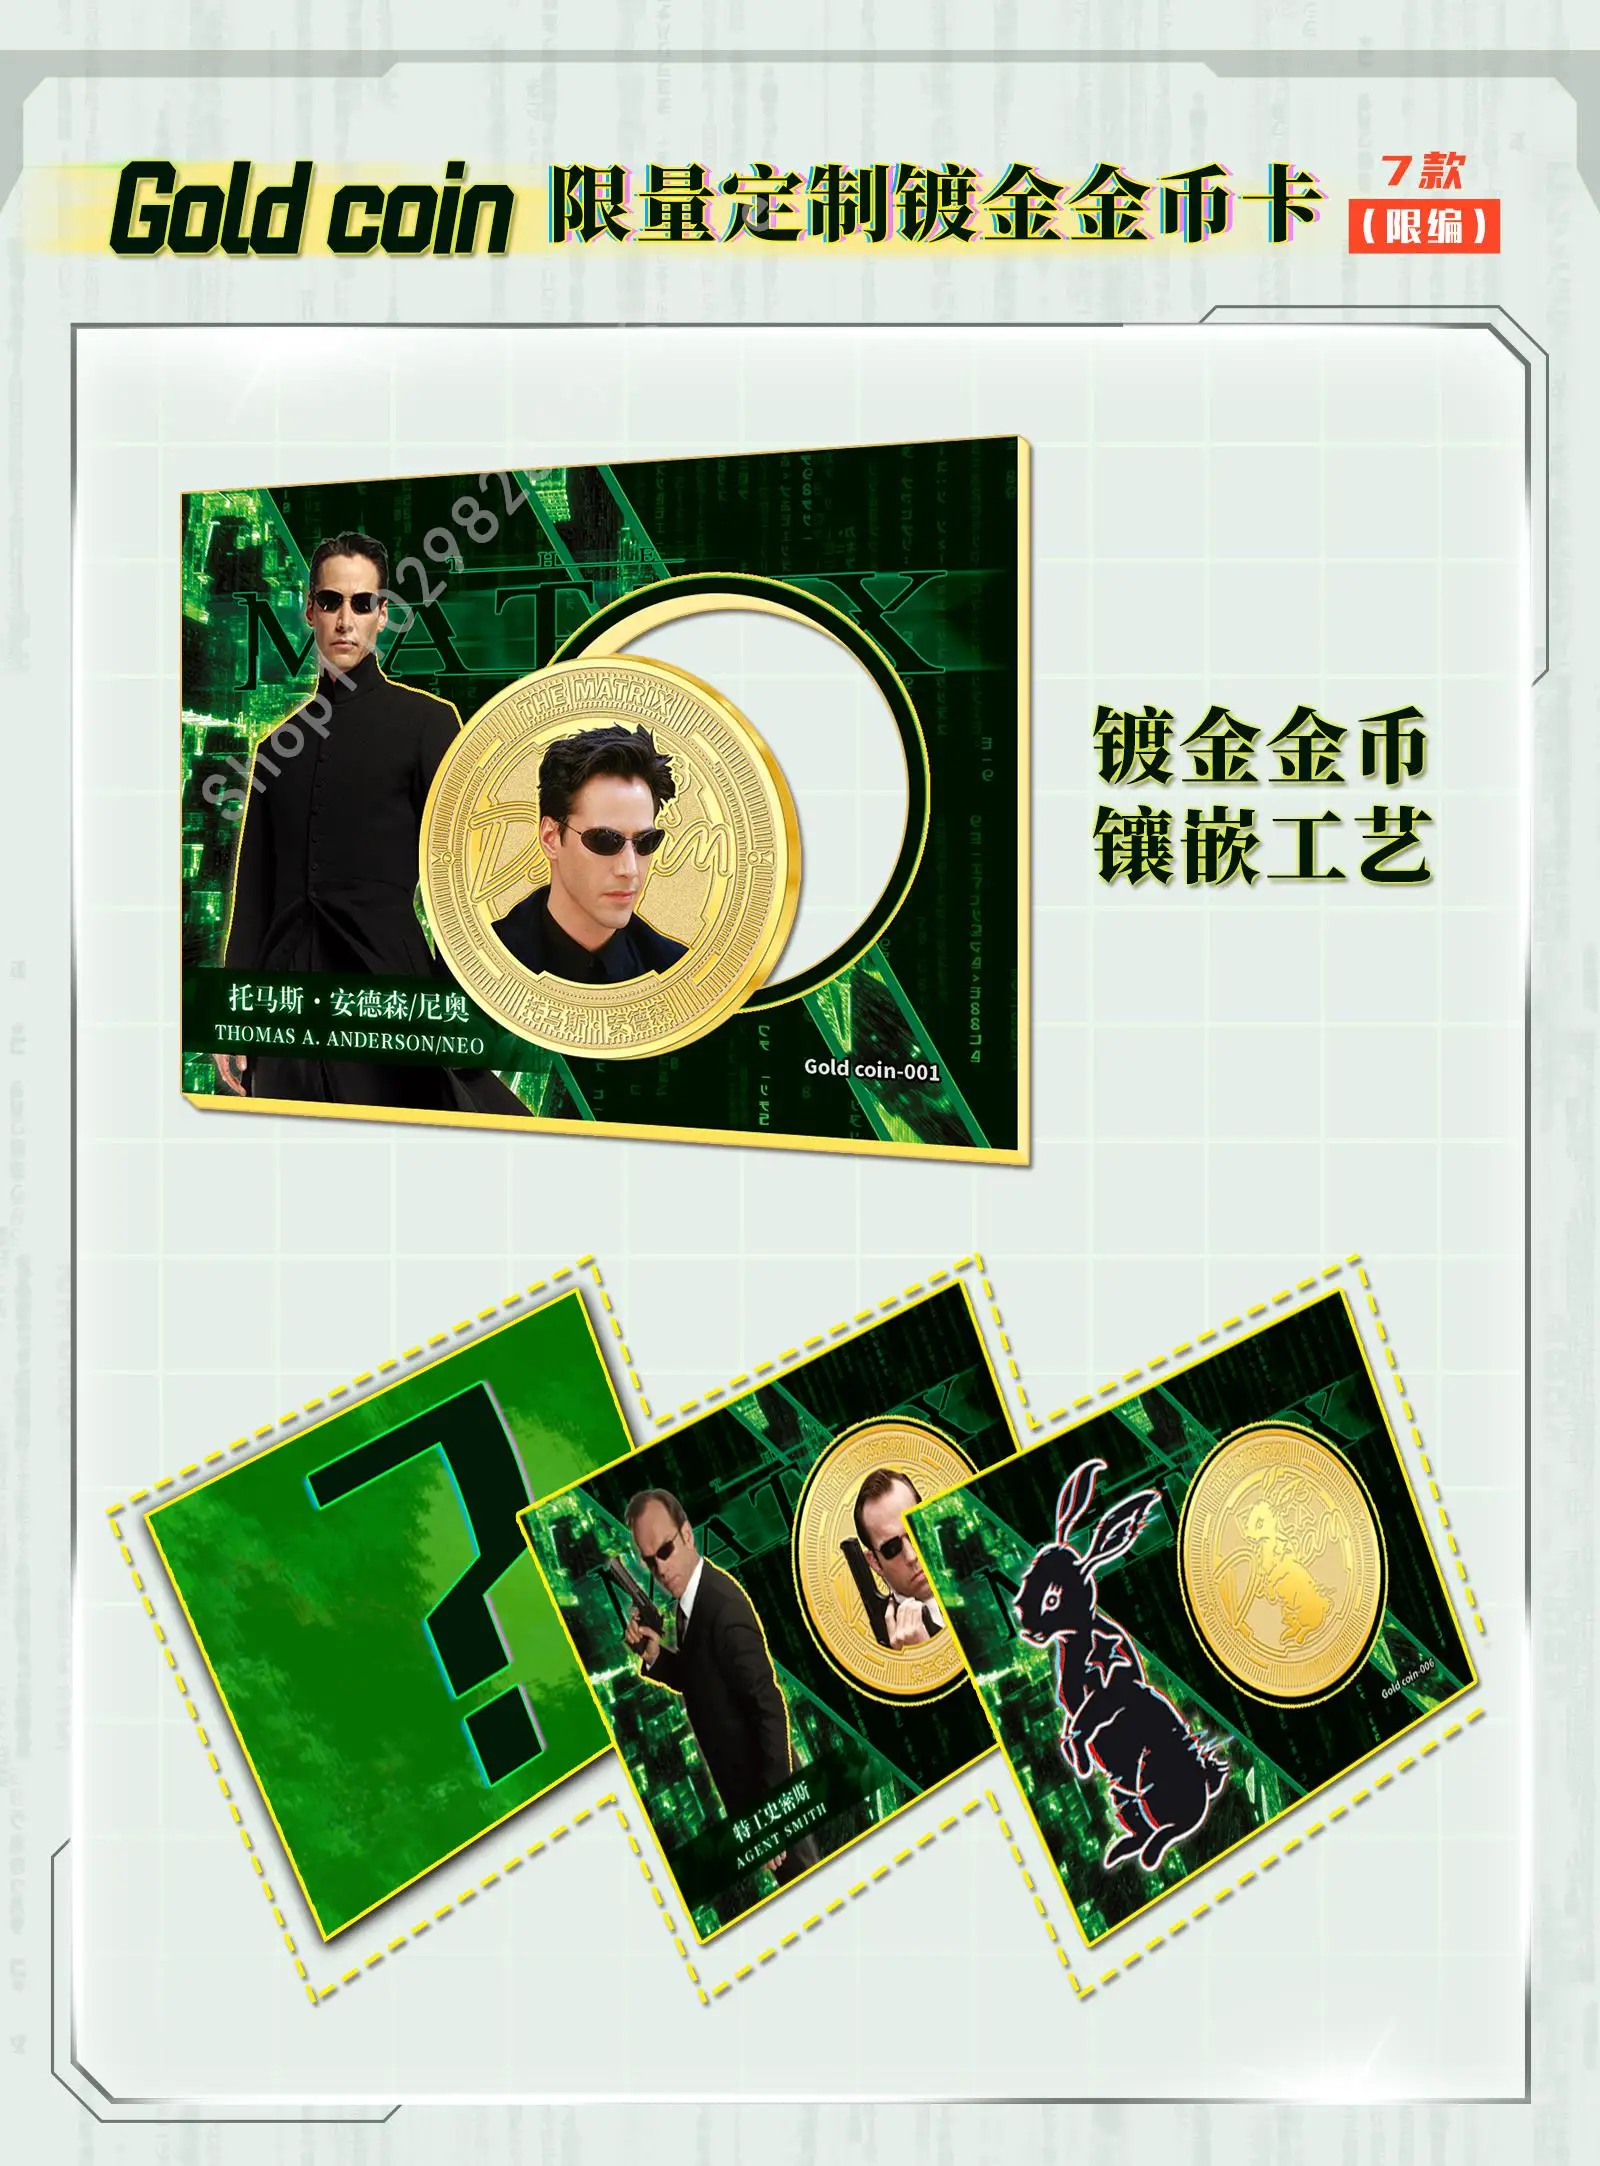 Razglednica iz zbirke Matrix za djecu, klasični znanstveno-fantastični film, limited edition, Individualne zlatne kartice s kovanicama, Igre igračke